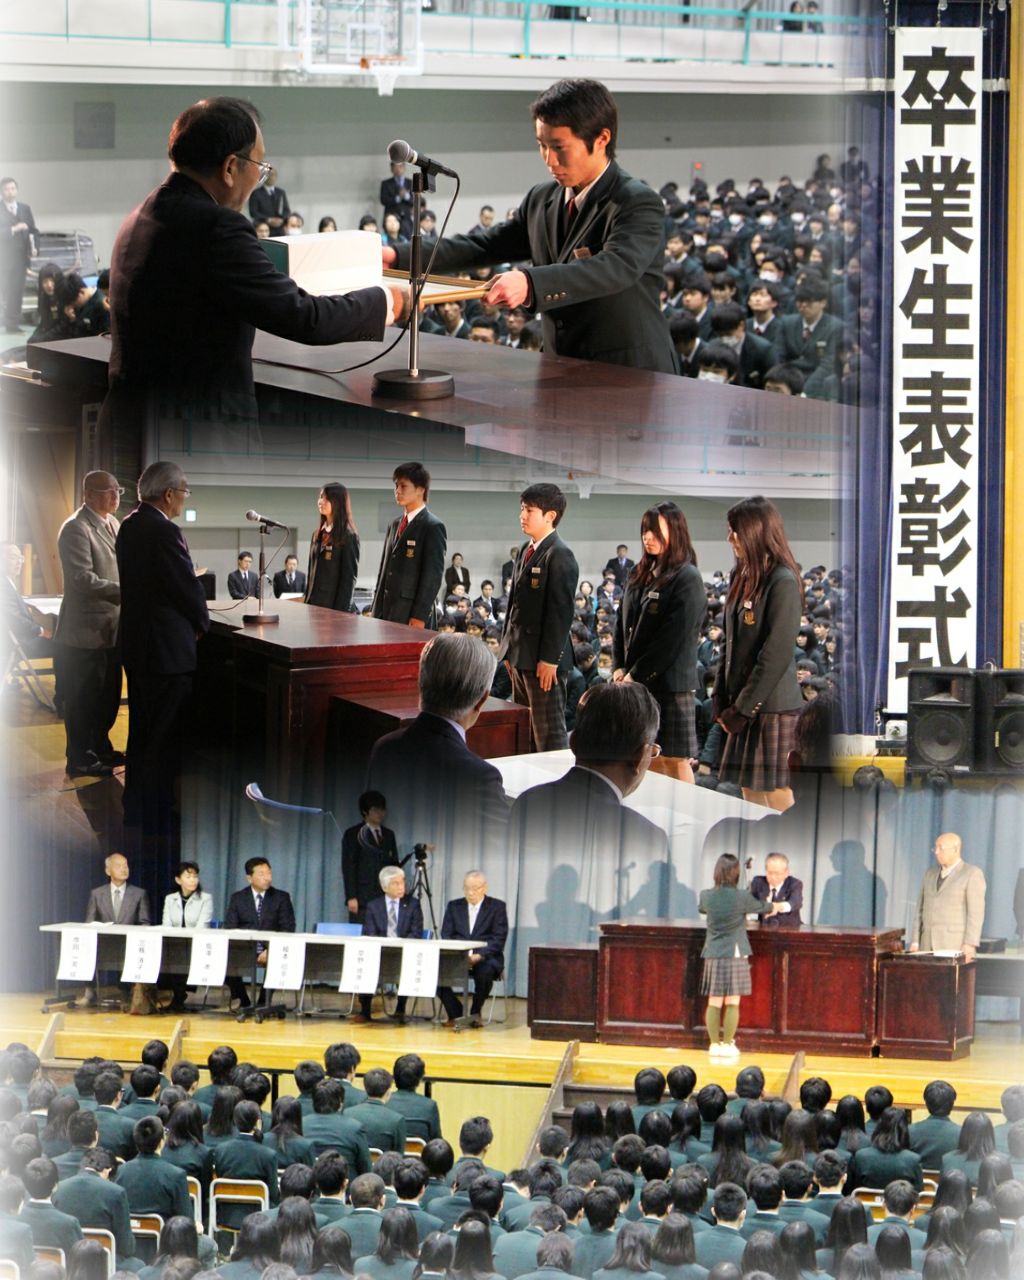 http://www2.shoshi.ed.jp/news/2016.03.01_commendation_ceremony.jpg